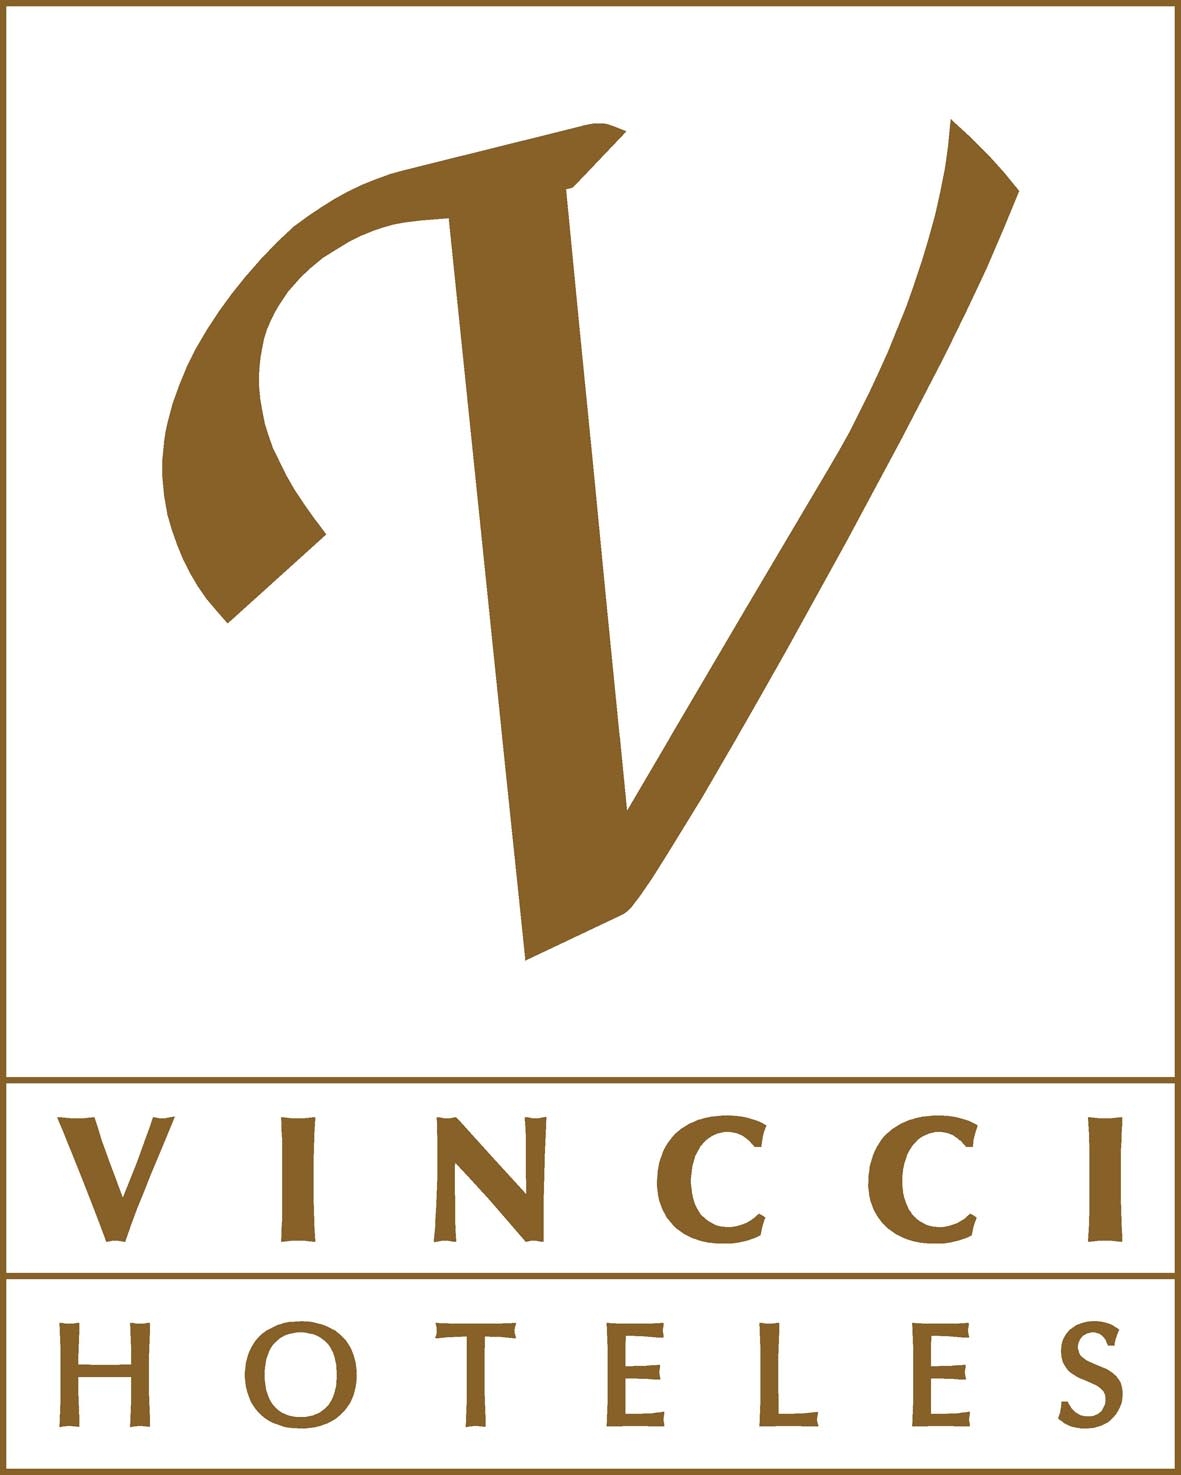 Imagen de la empresa Vincci Hoteles a la que se le ofrecen los descuentos